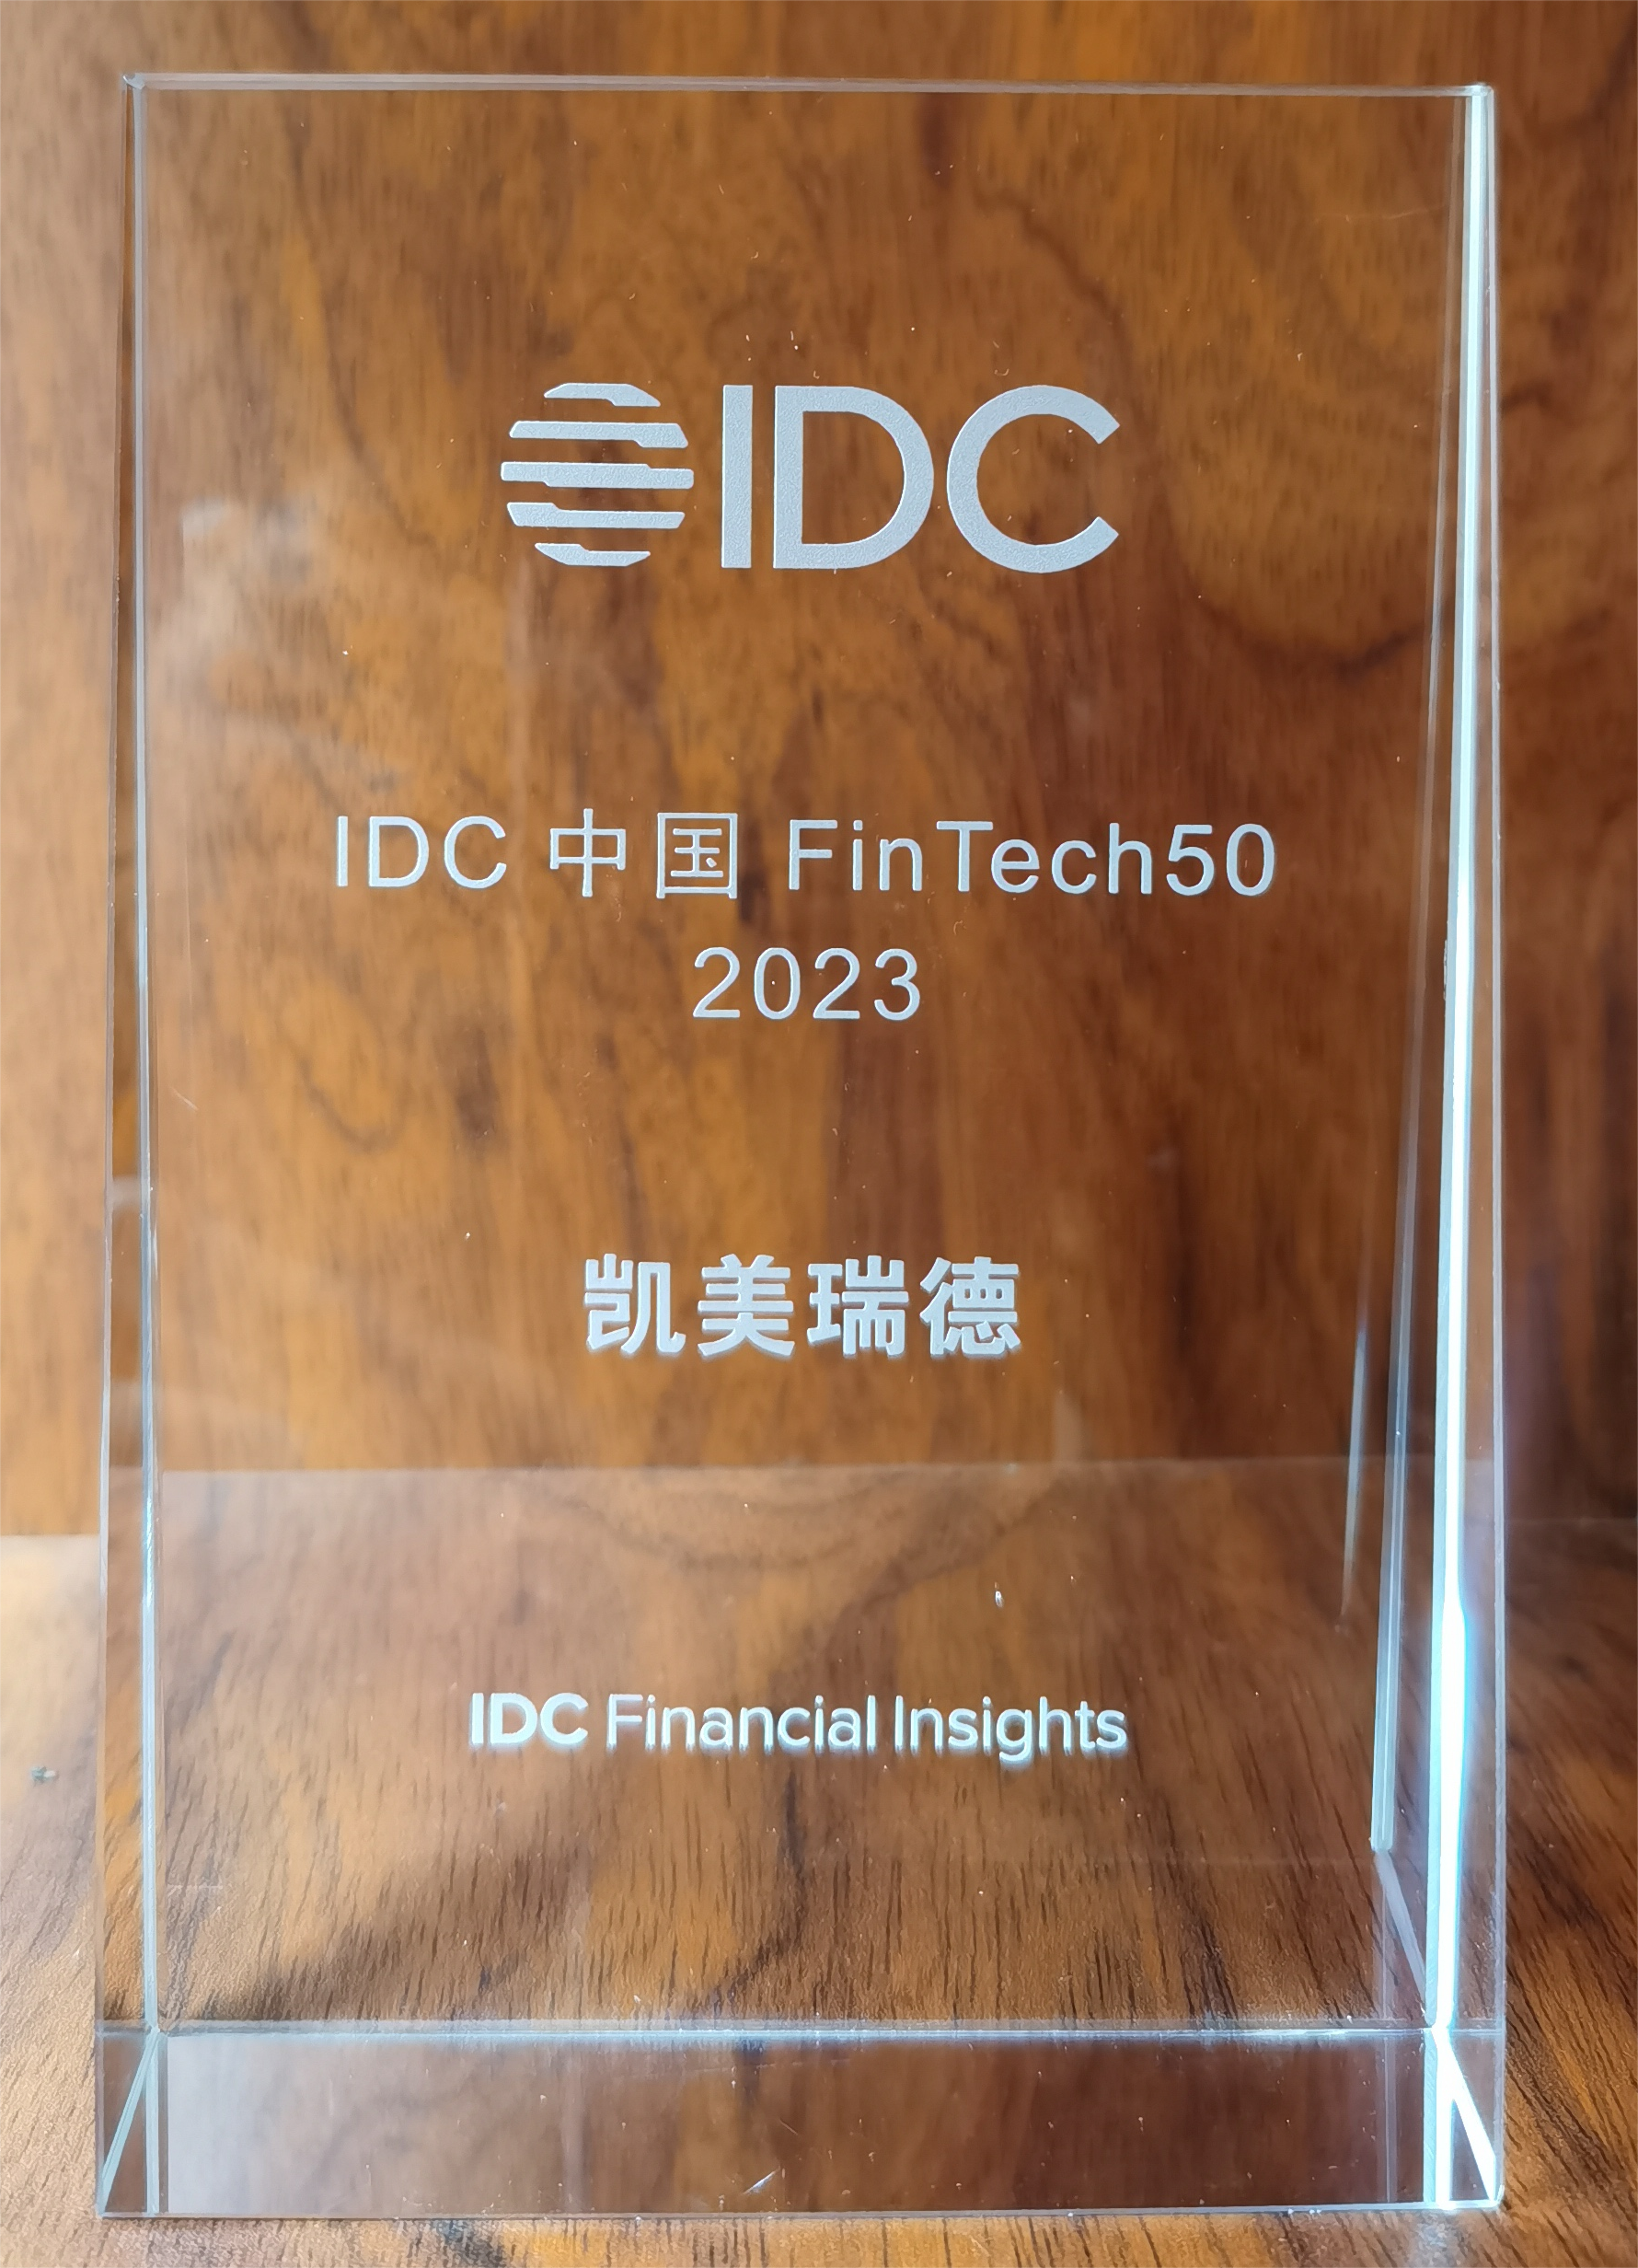 IDC China's FinTech 50